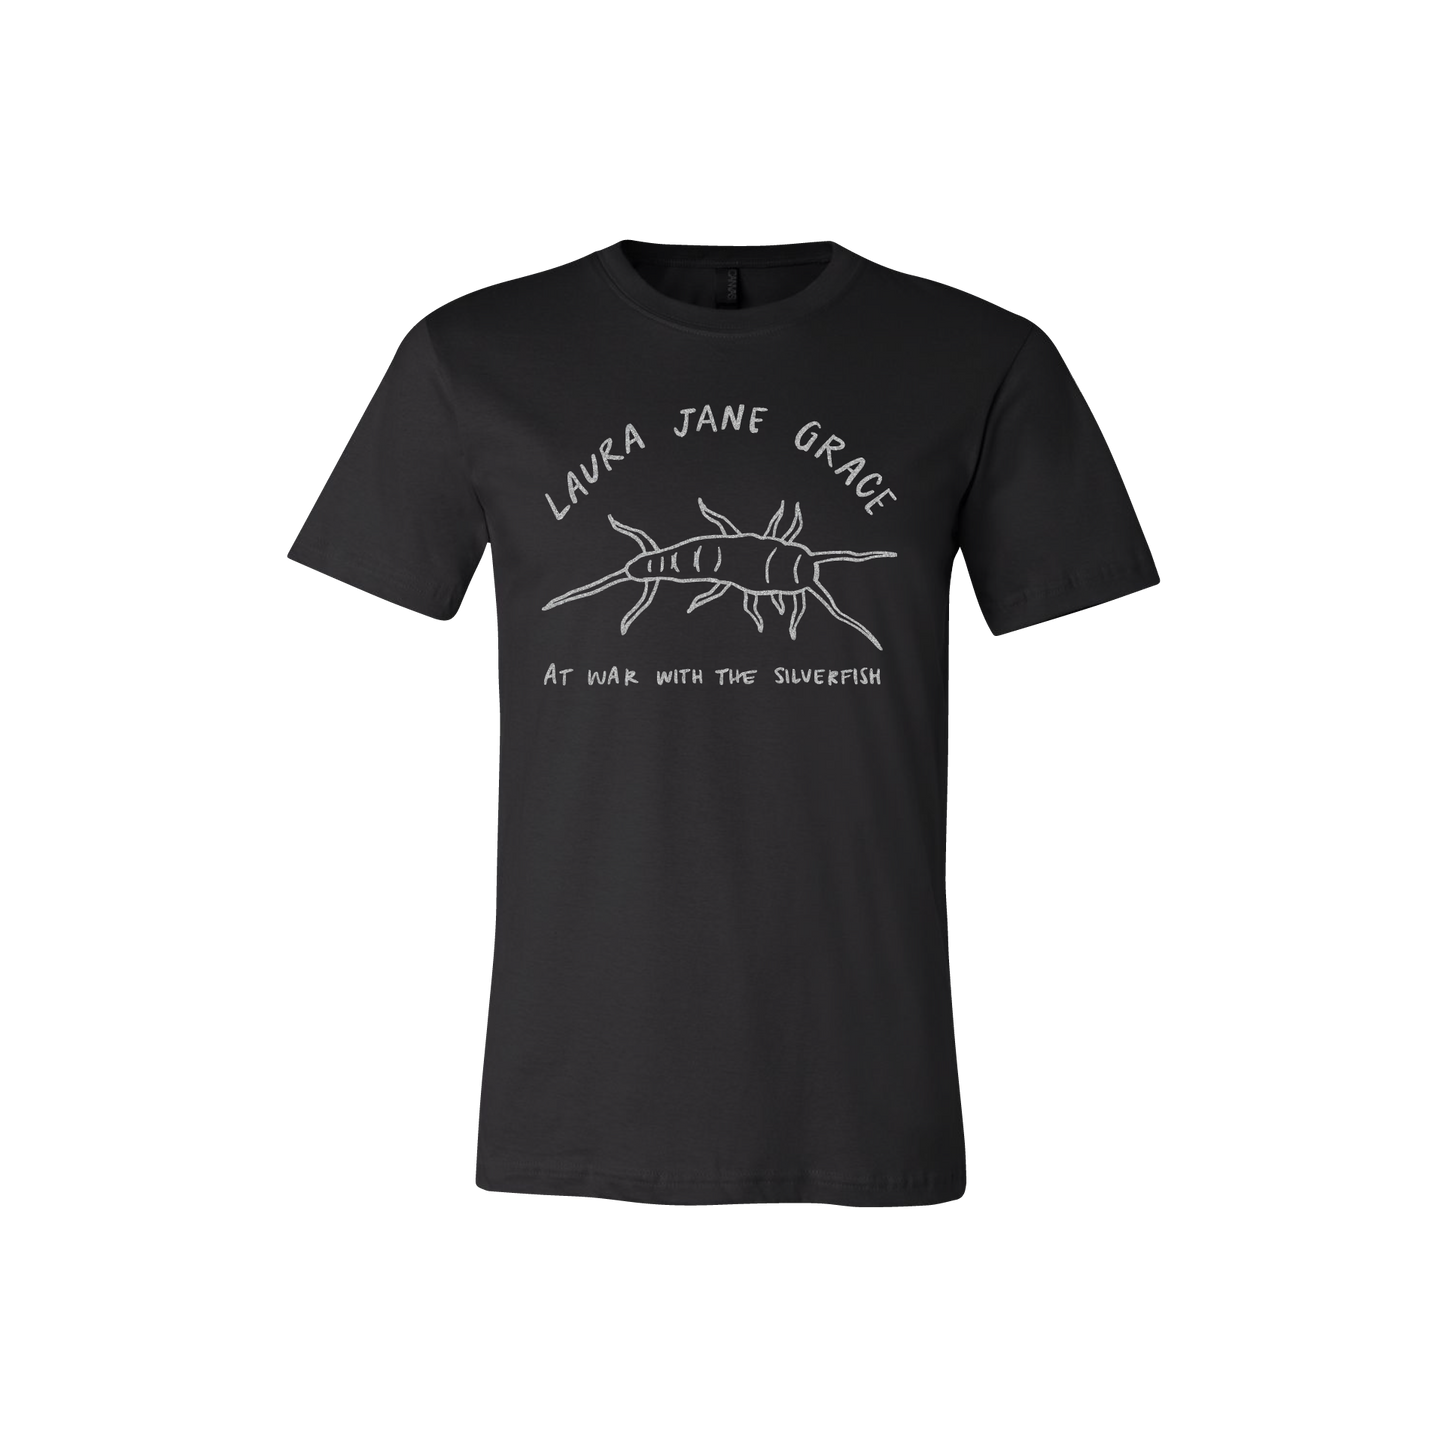 Laura Jane Grace Silverfish T-shirt